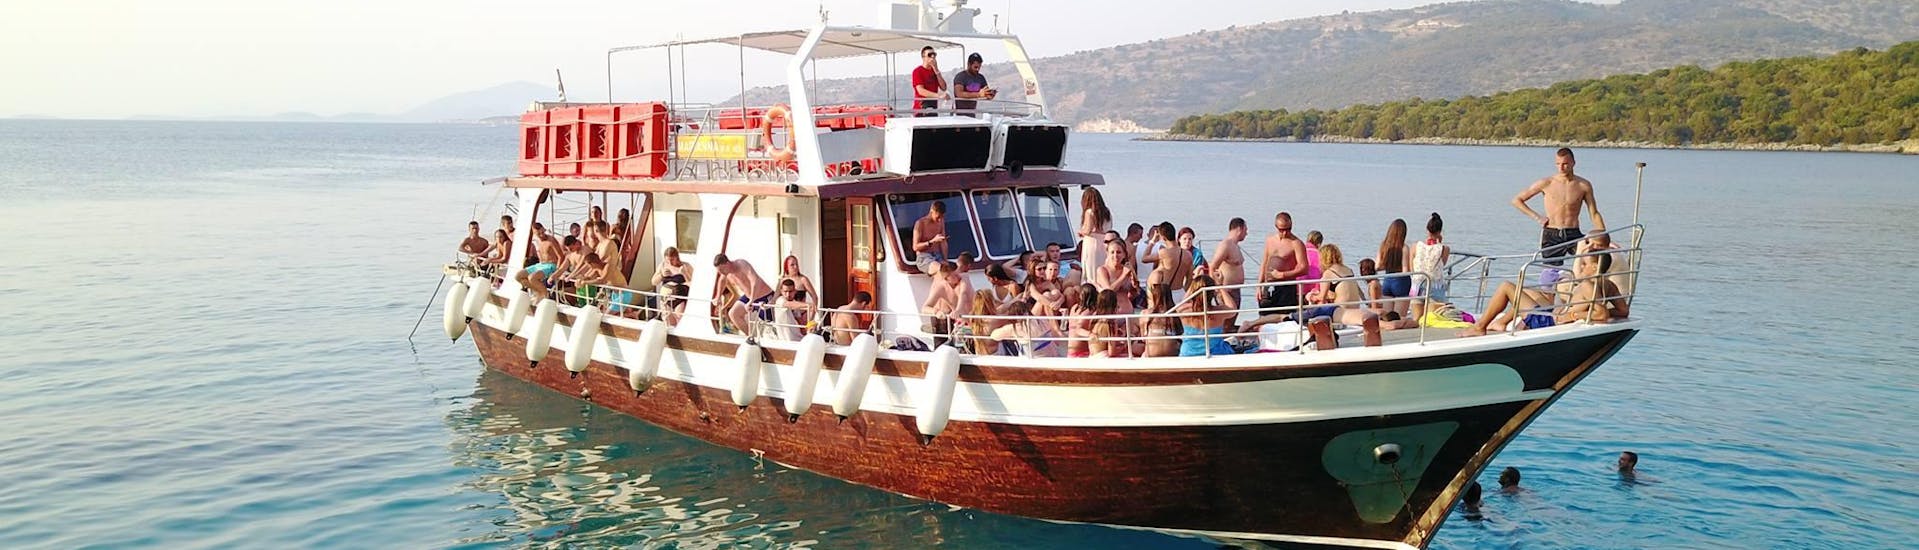 Photo du bateau de Kavos Cruises utilisé pour les balades en bateau.